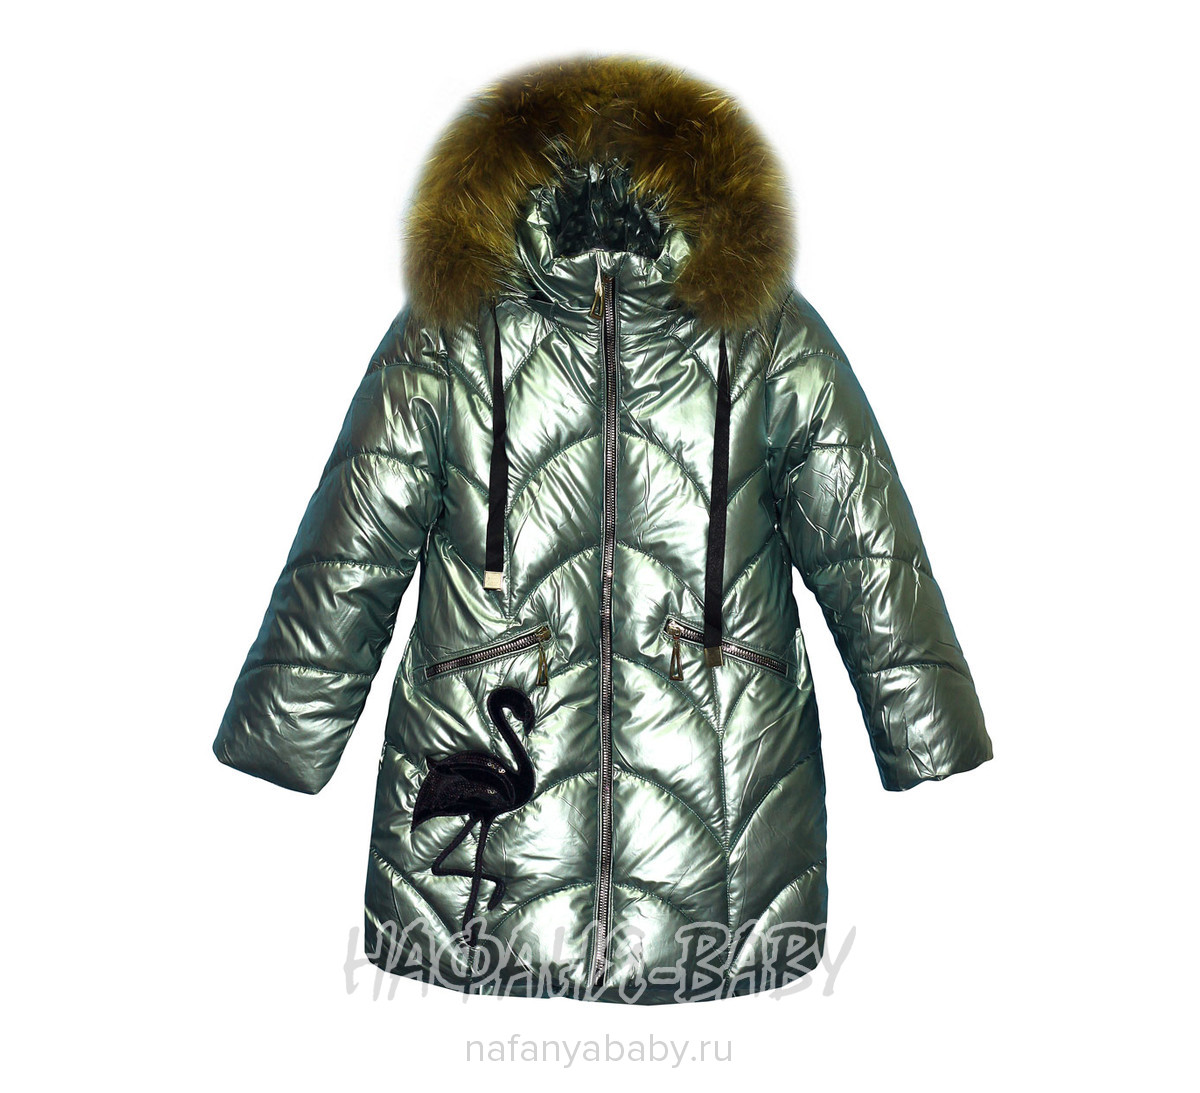 Зимняя удлиненная куртка DELFIN-FREE арт: 192, 1-4 года, 5-9 лет, оптом Китай (Пекин)